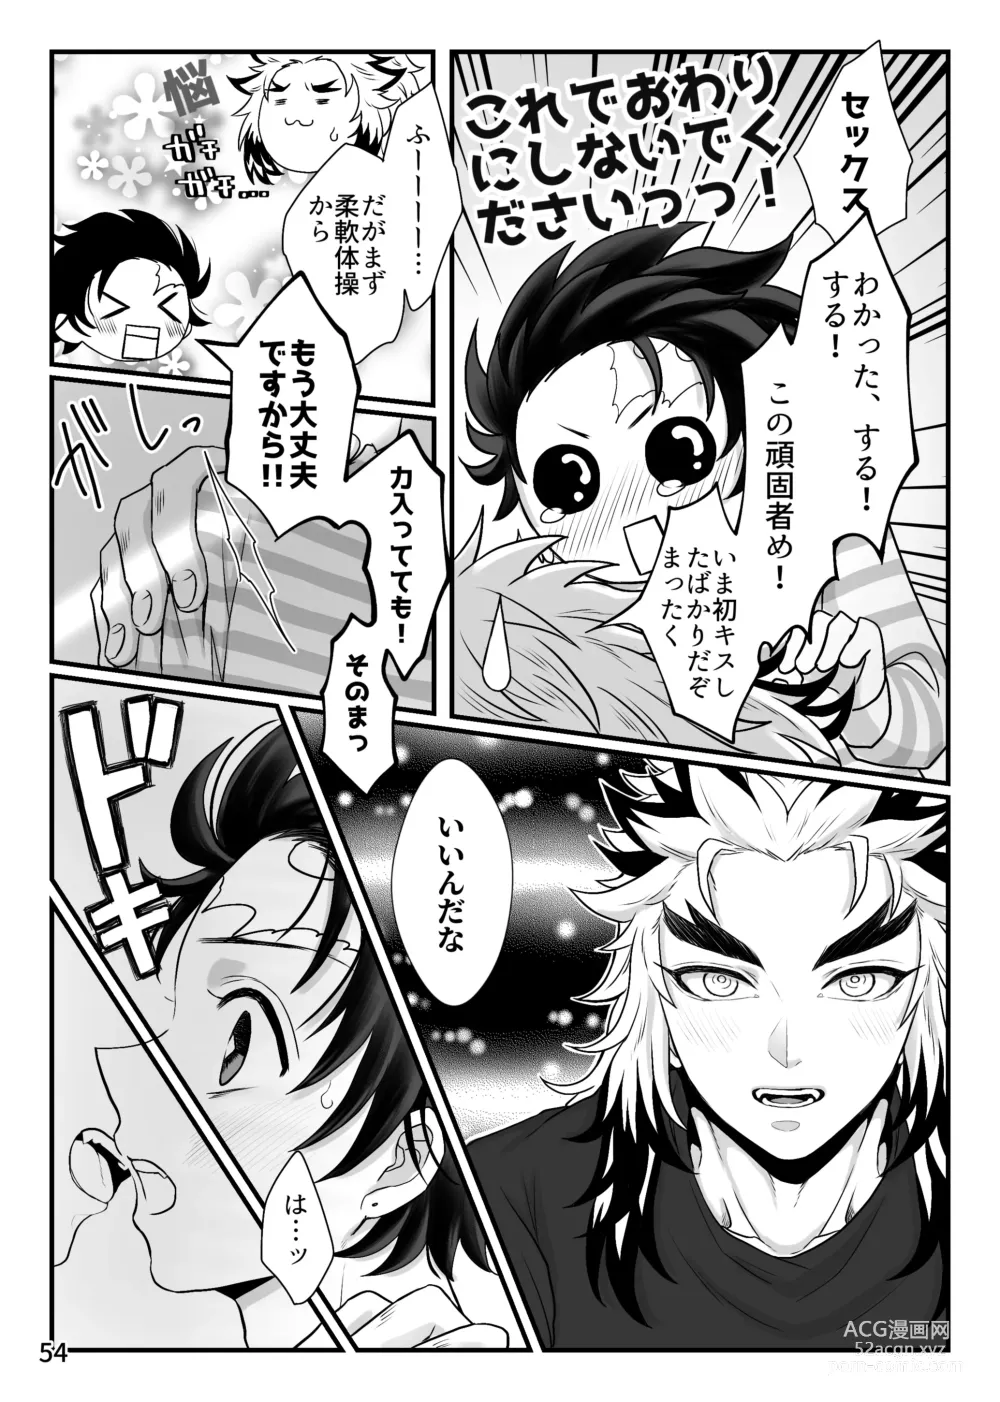 Page 54 of doujinshi Kono Gekijou o Shirazu ni